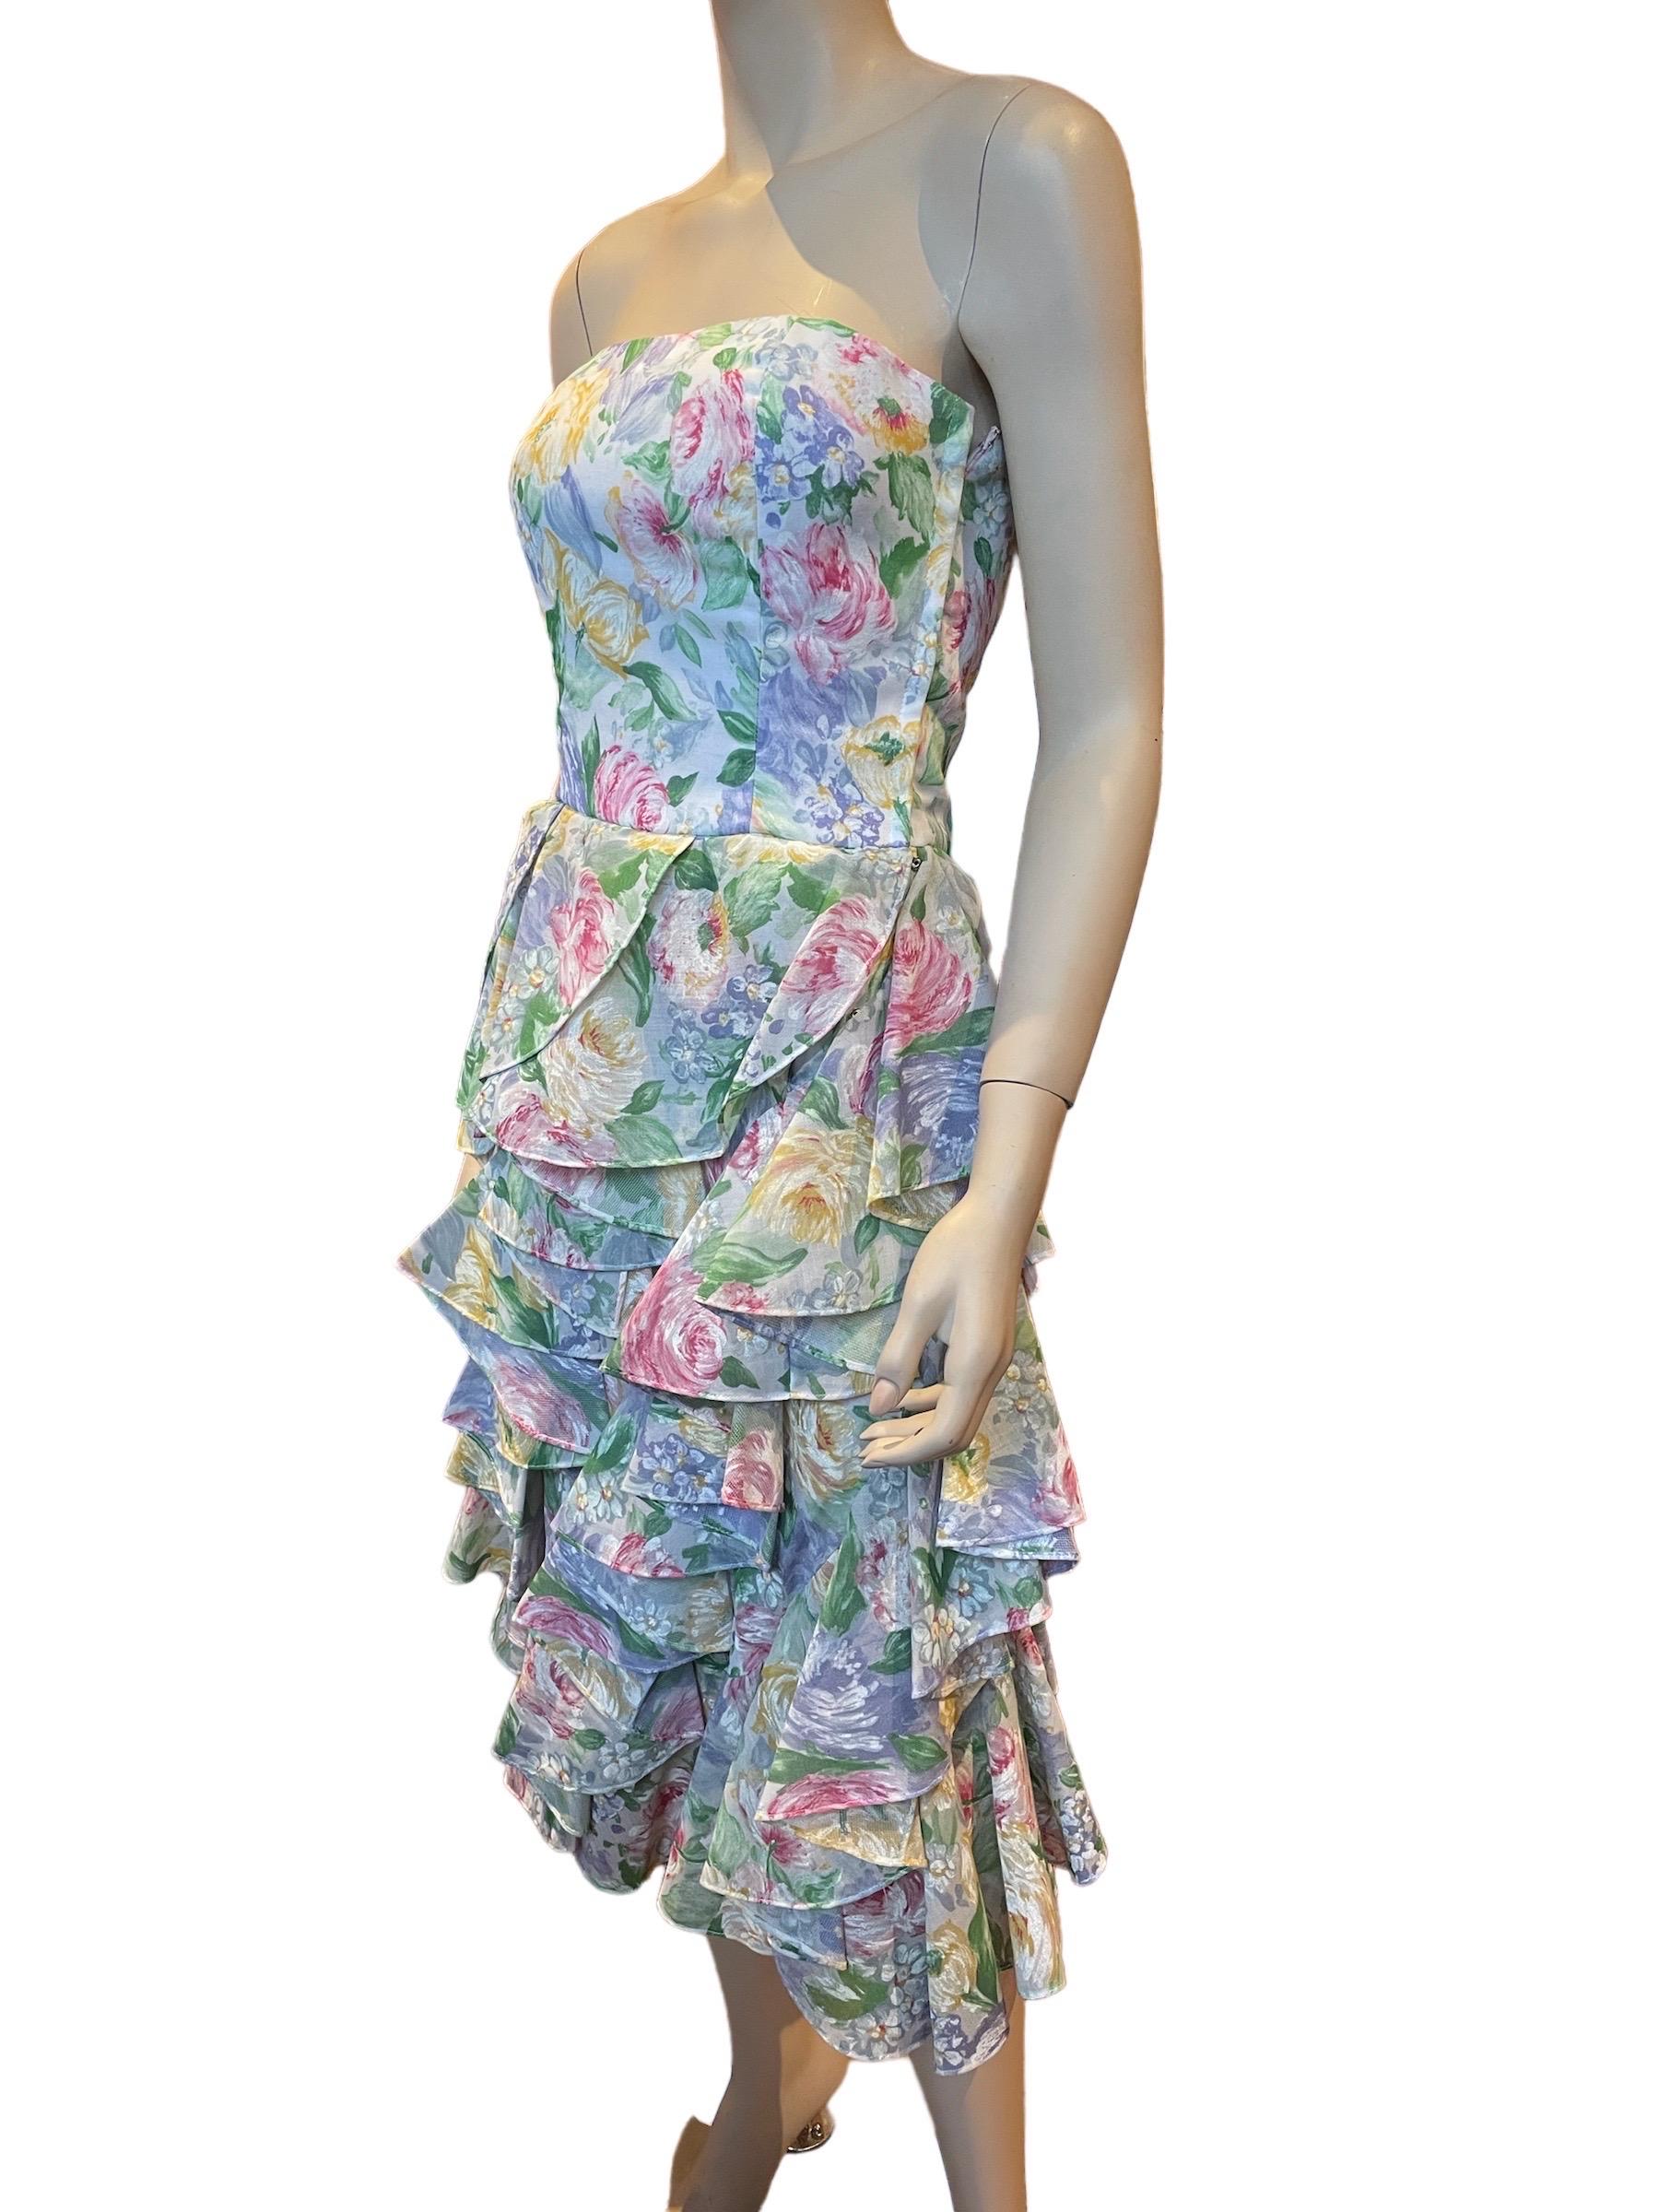 Victor Costa, robe bustier à fleurs aquarelle avec jupe à volants, années 1980 

Une belle robe florale avec un corsage structuré et désossé et des volants doublés de tulle. 